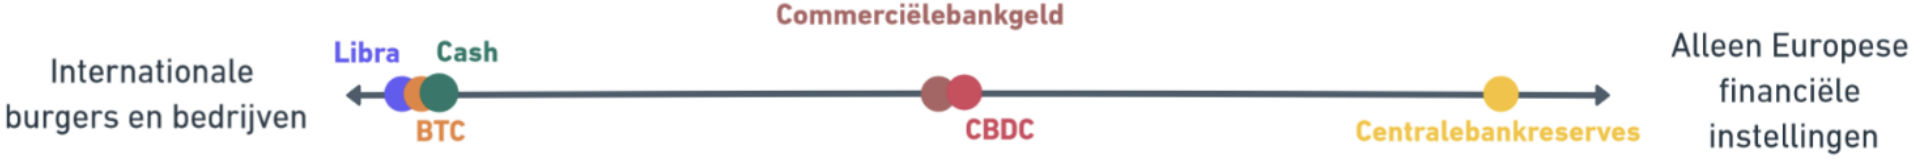 DNB CBDC vs Bitcoin vs Libra 6.jpg